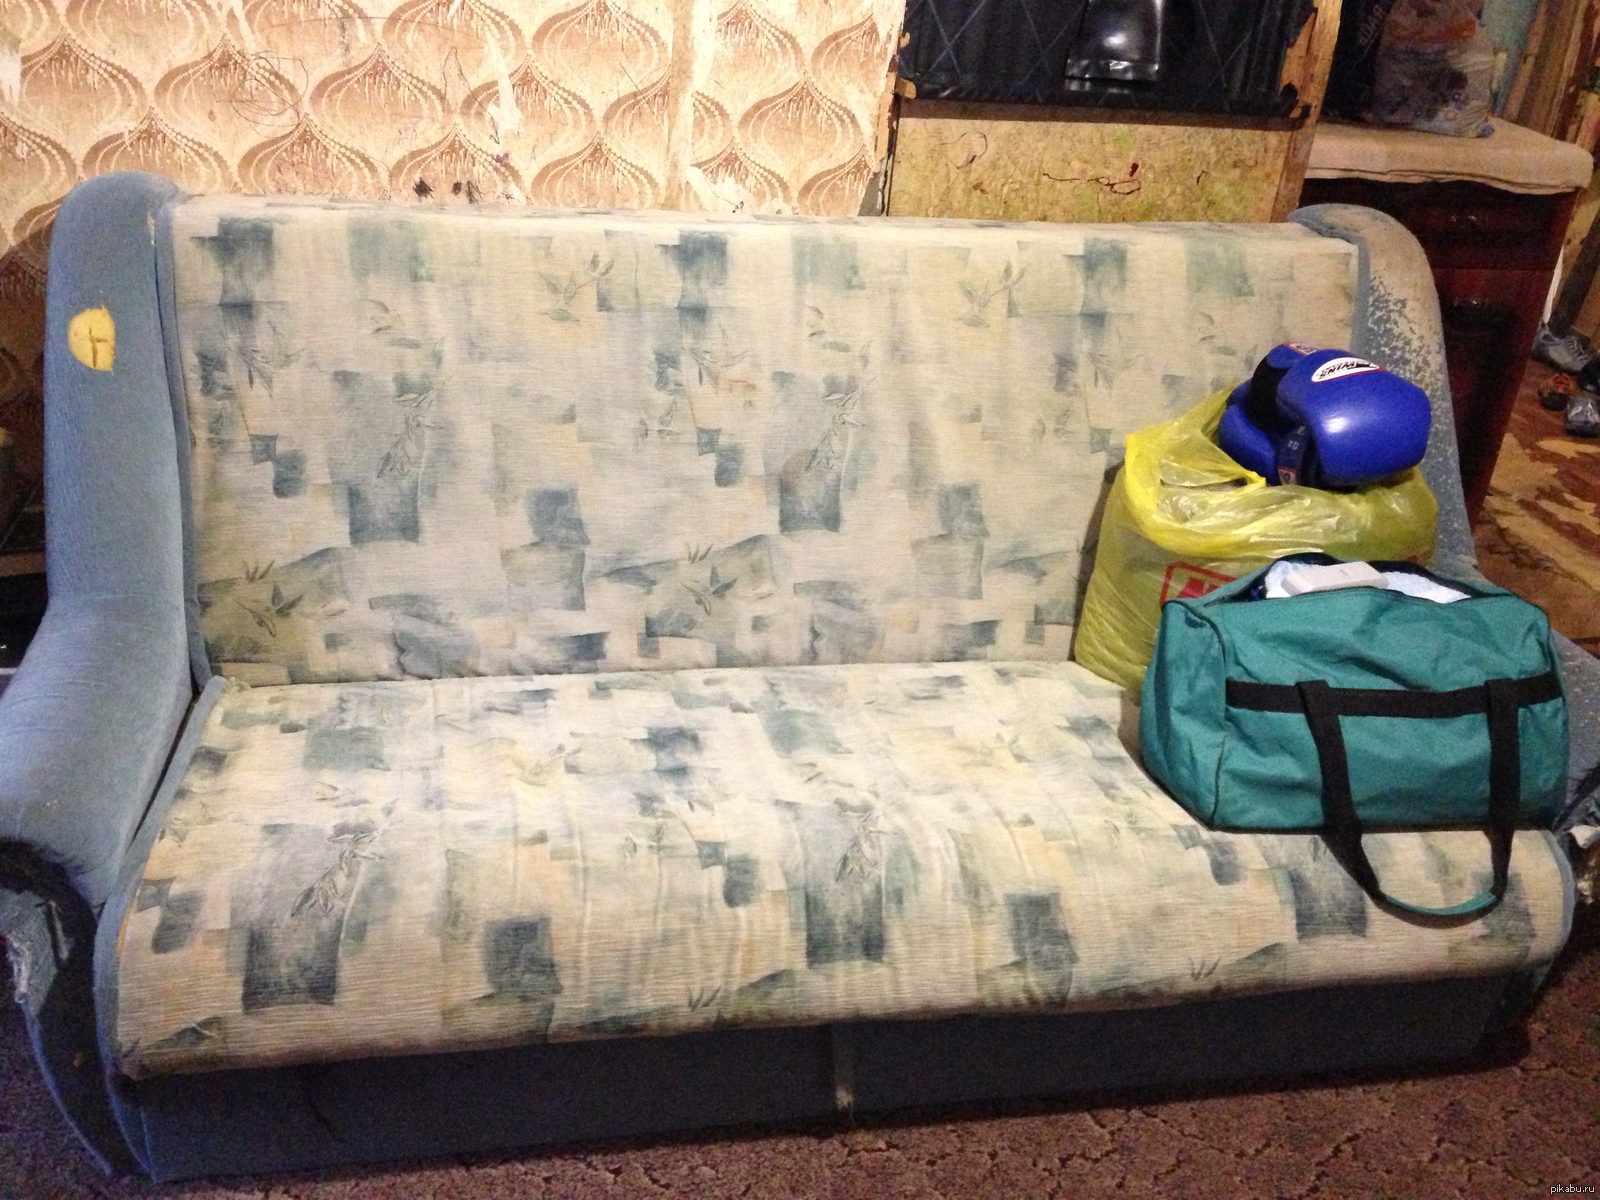 старый диван на новый с доплатой